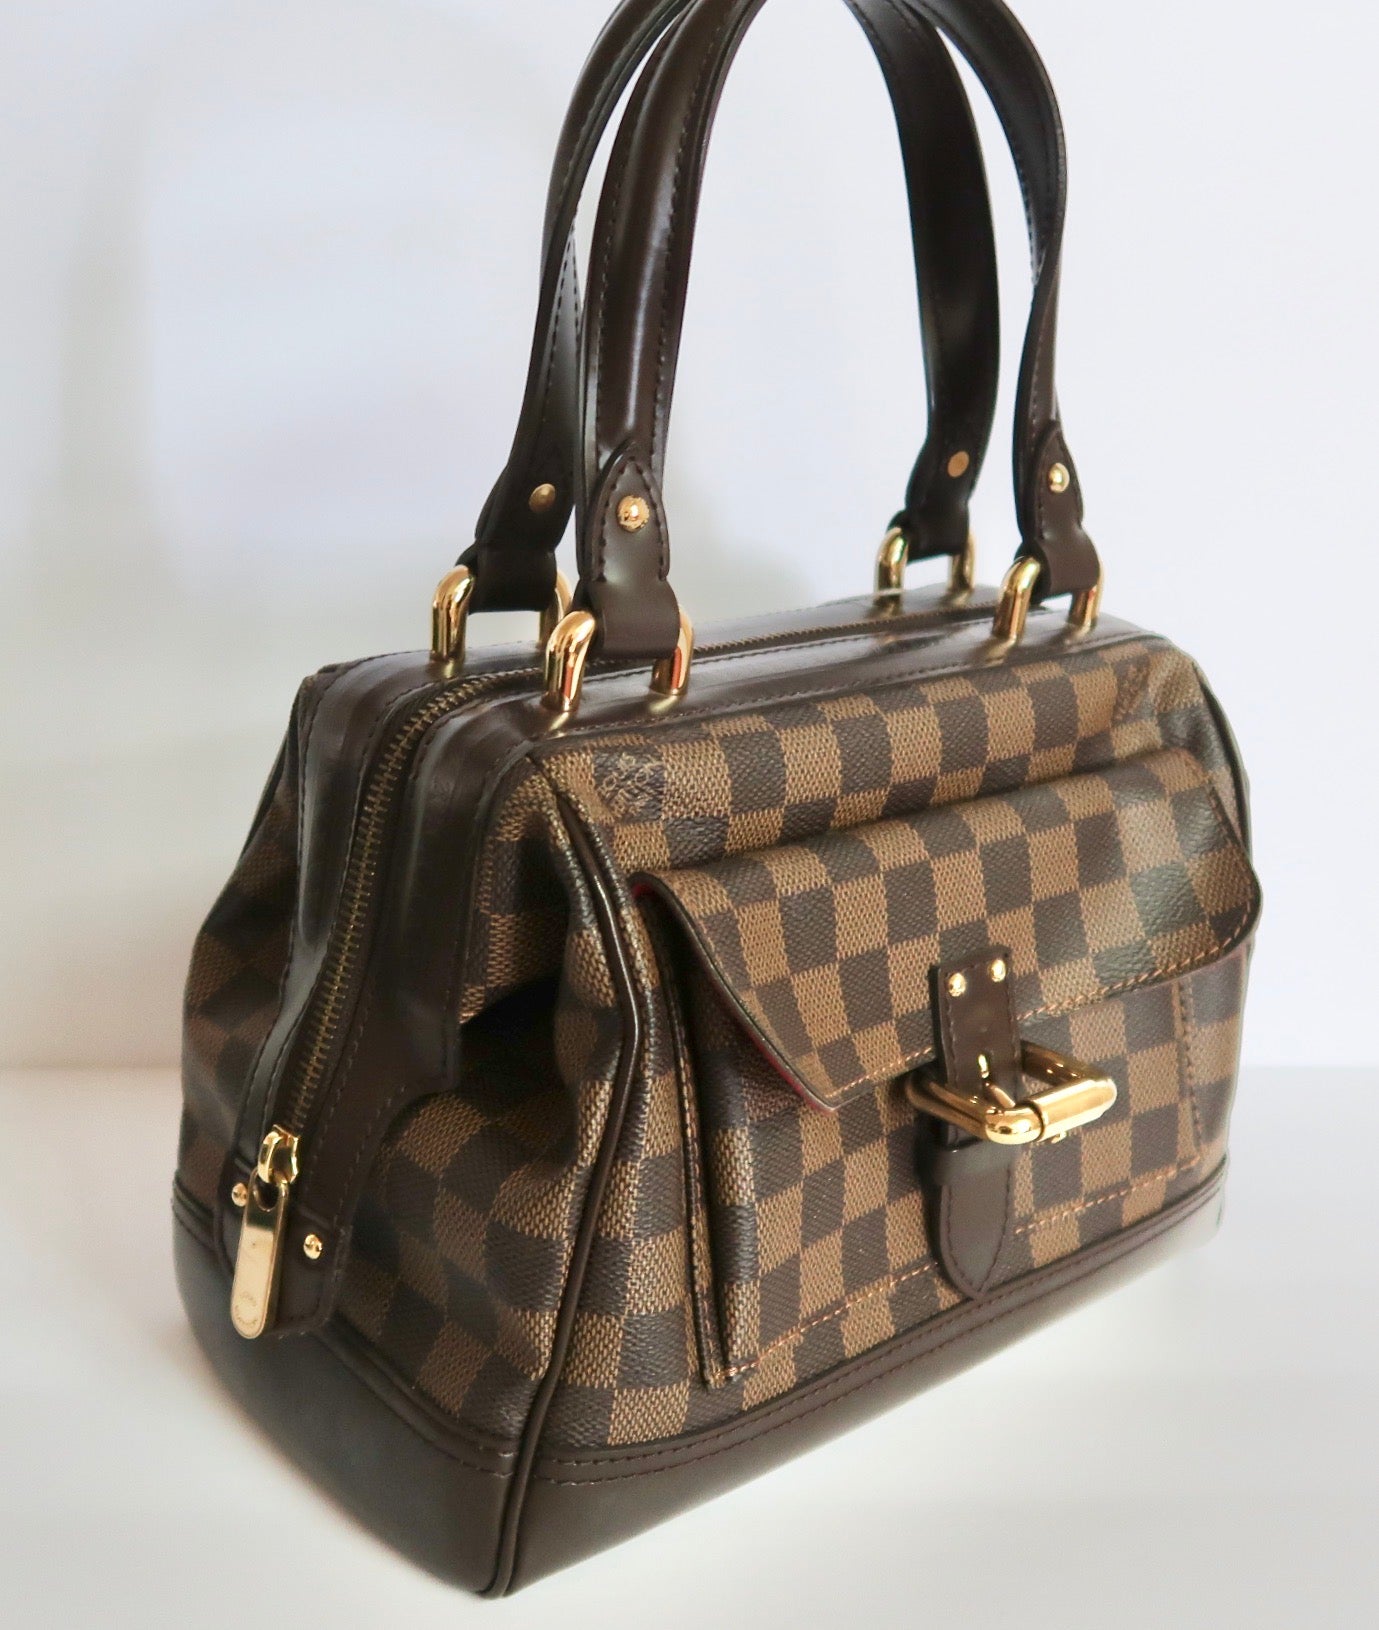 Louis Vuitton Knightsbridge Damier handbag - Attikk